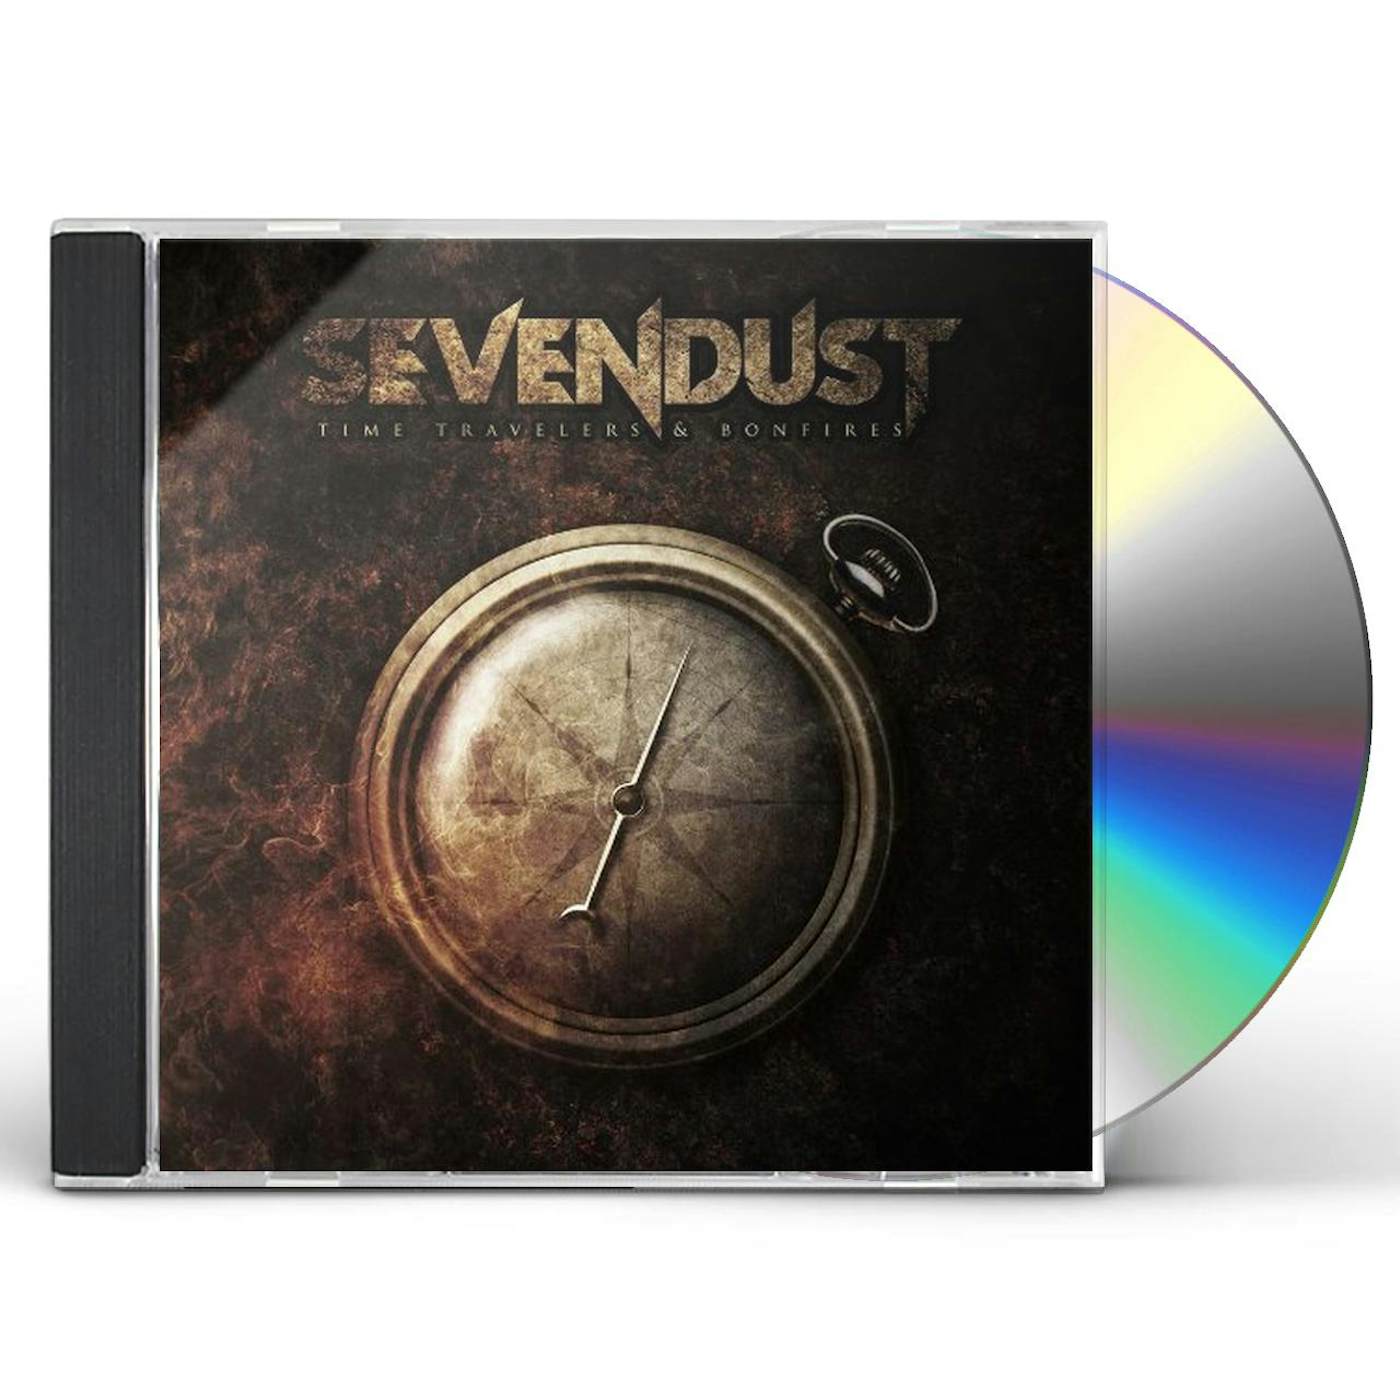 Sevendust TIME TRAVELERS & BONFIRES CD